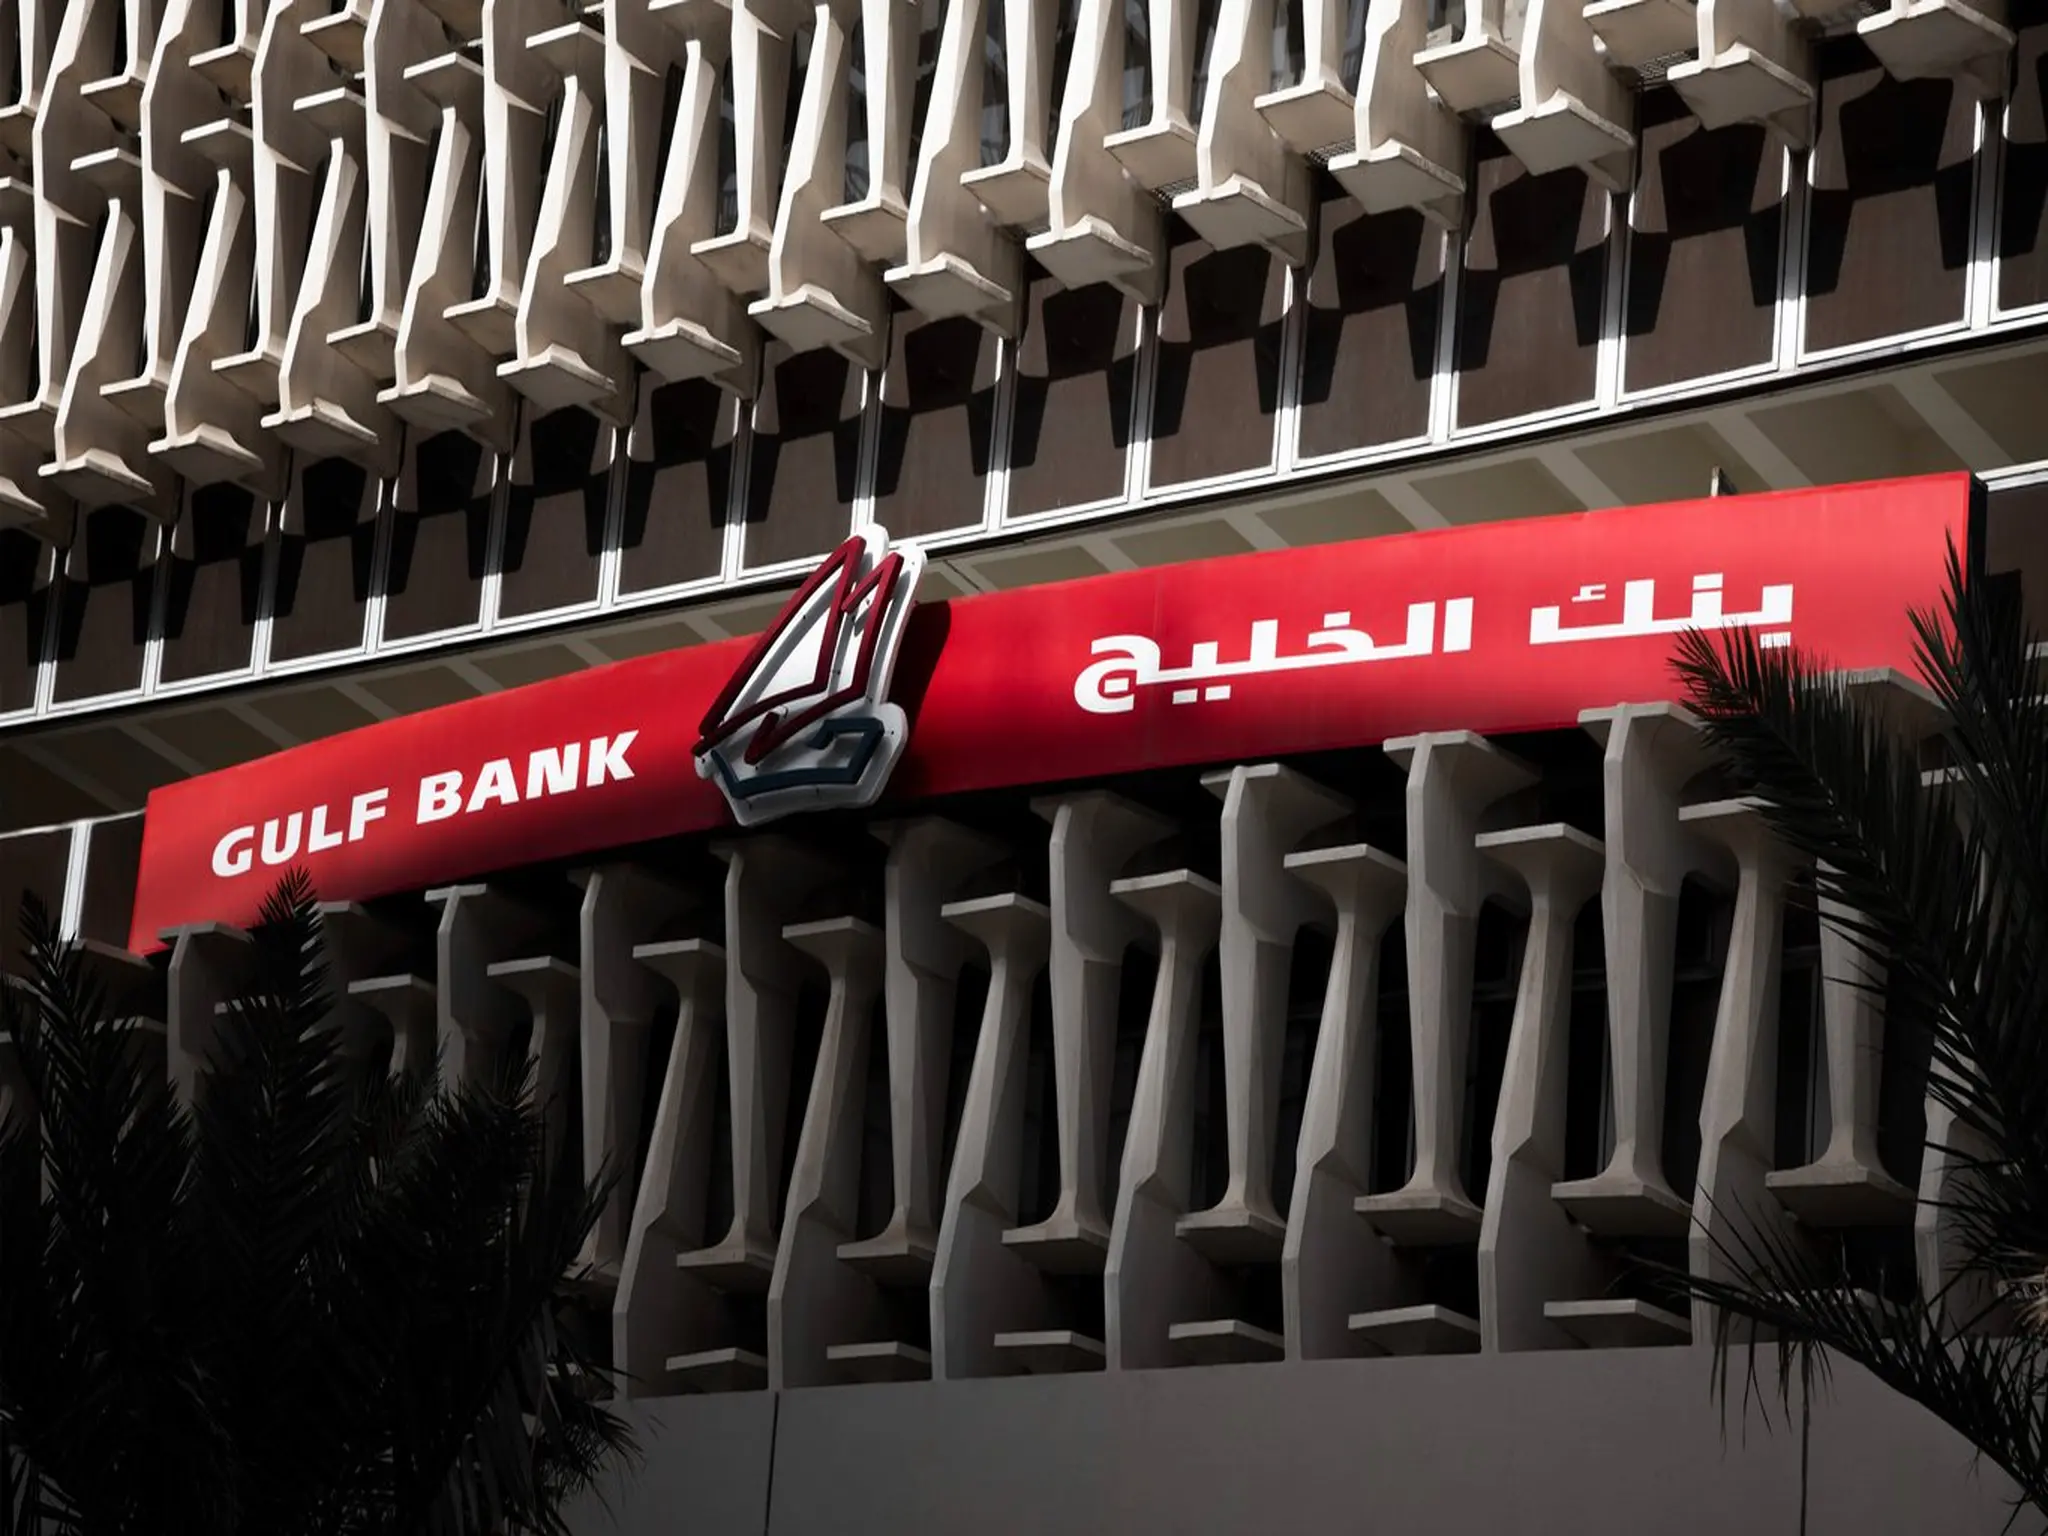 بنك الخليج الكويتي يعلن عن عدد من الخدمات البنكية الجديدة من خلال تطبيقه